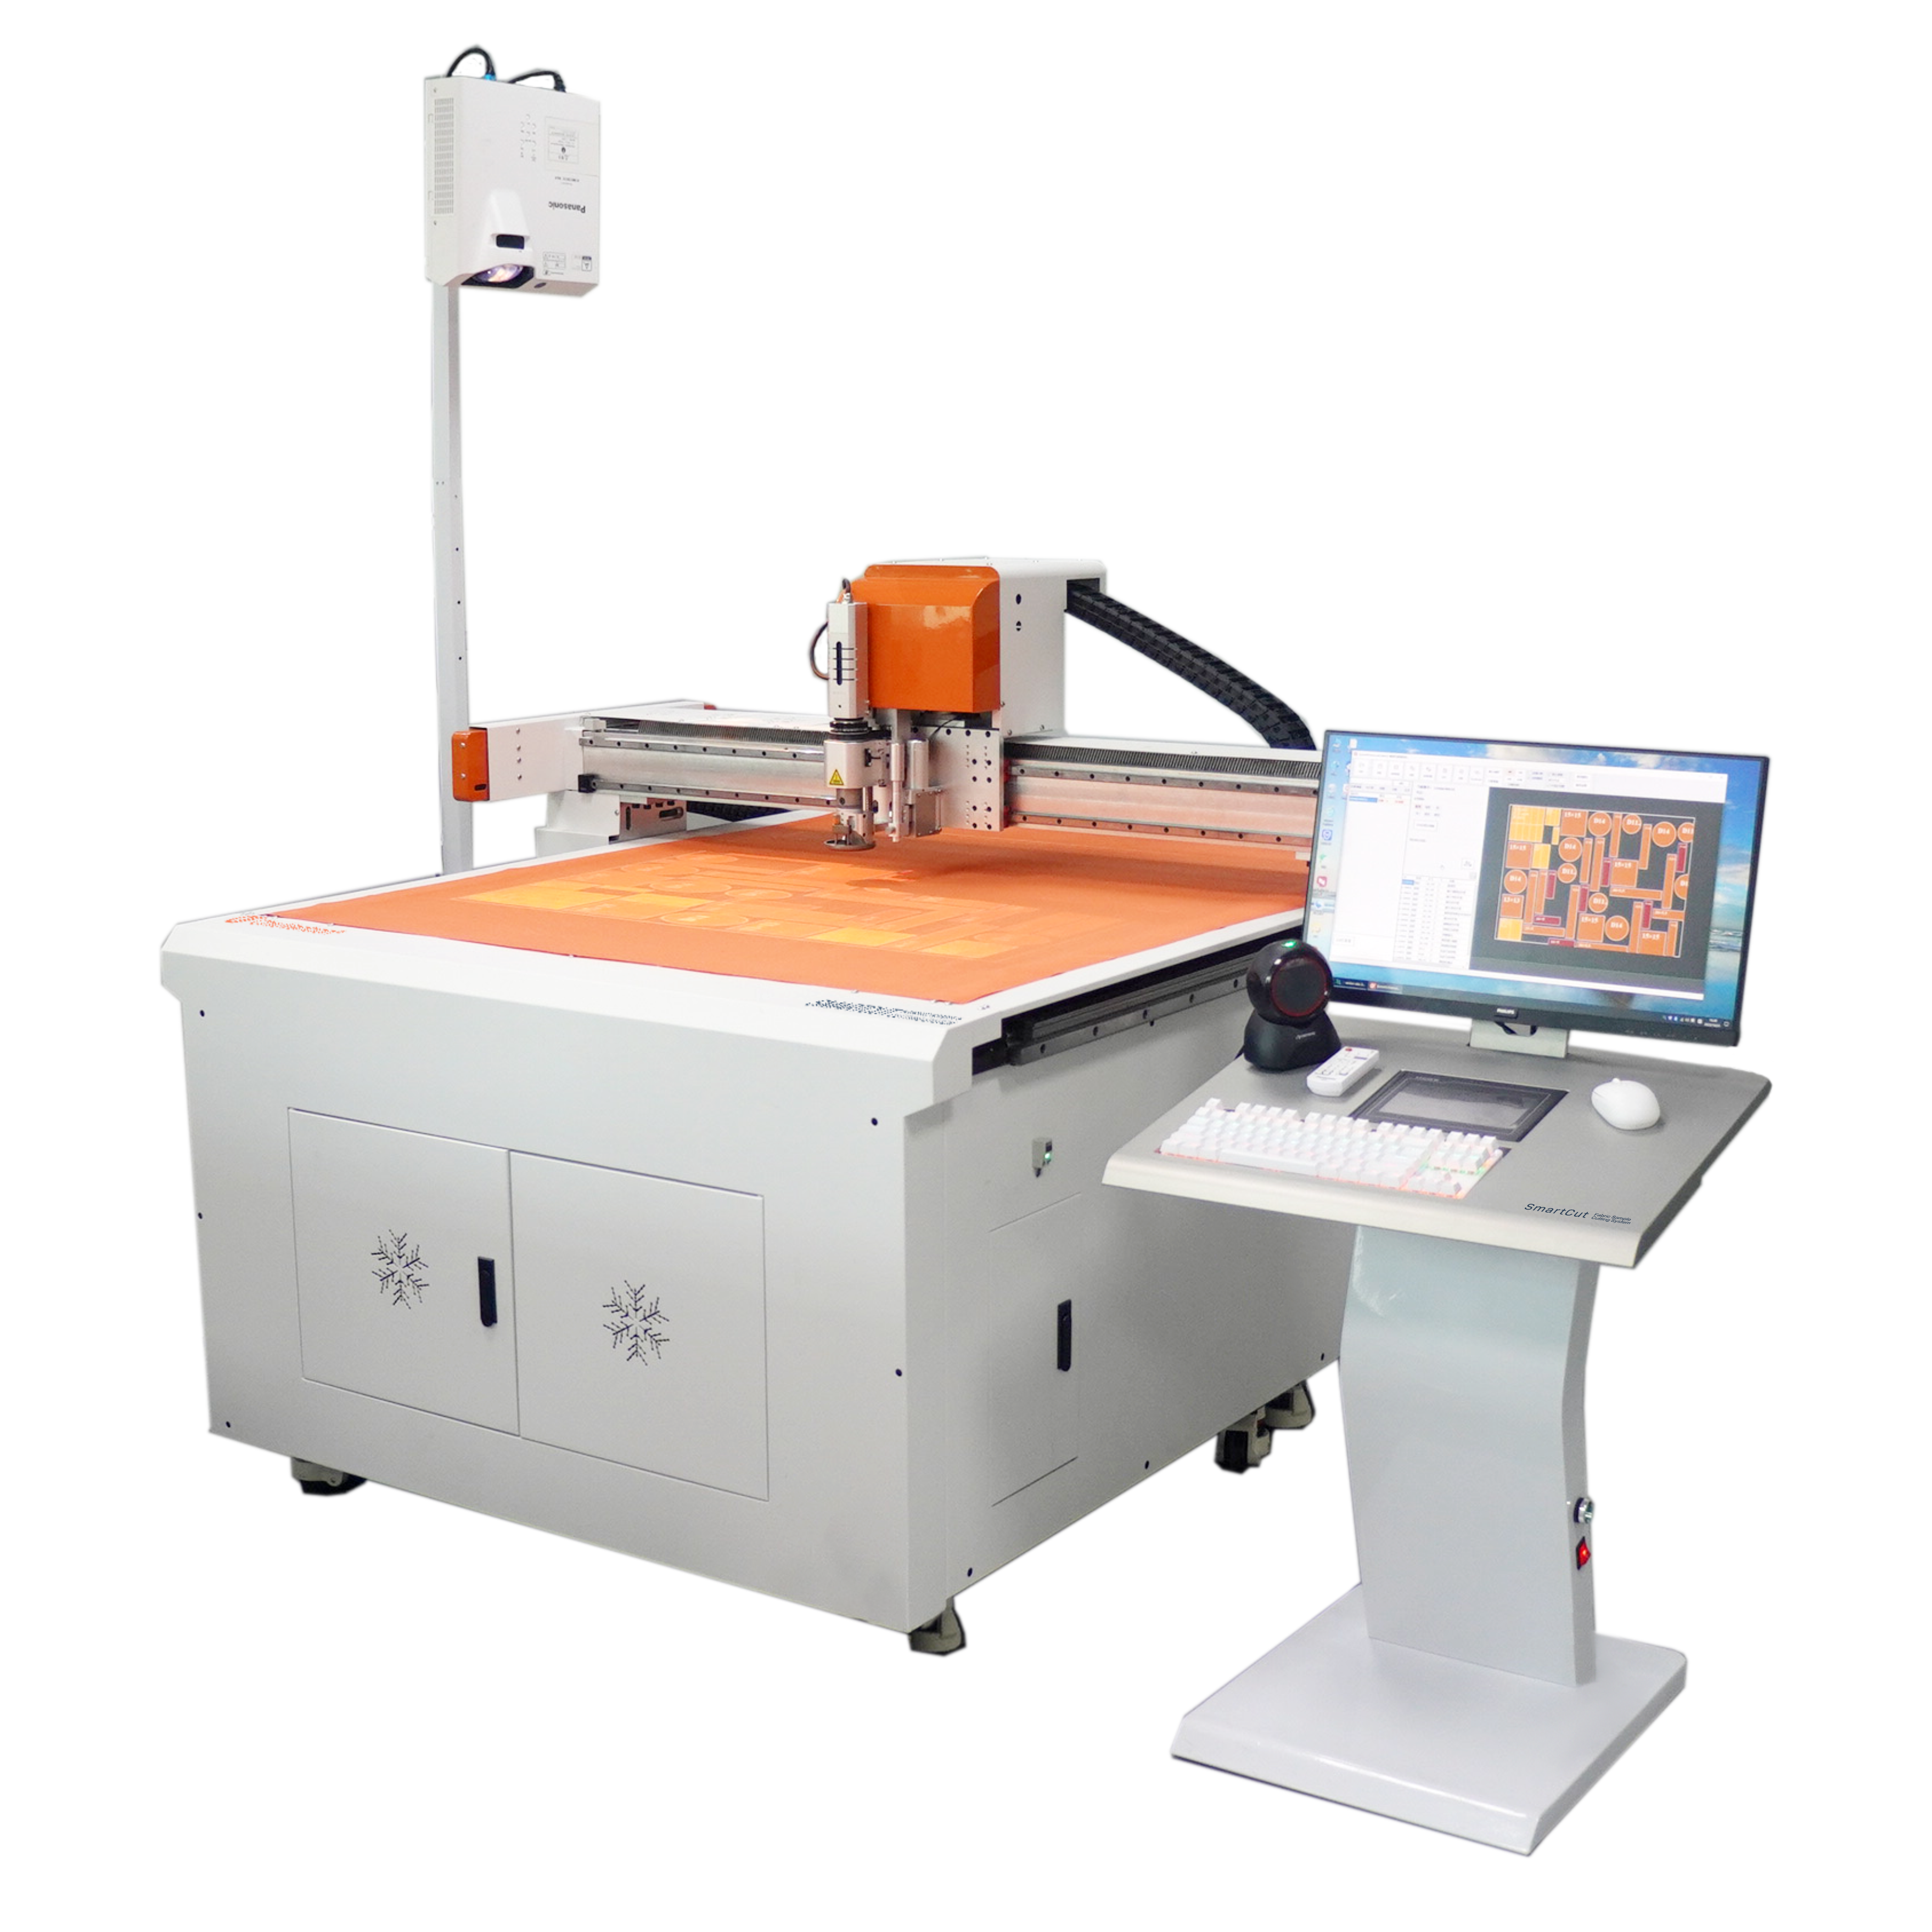 Sistema di taglio di campioni di tessuto SmartCut | Una nuova macchina sviluppata dalla società sorella ChiuVention.